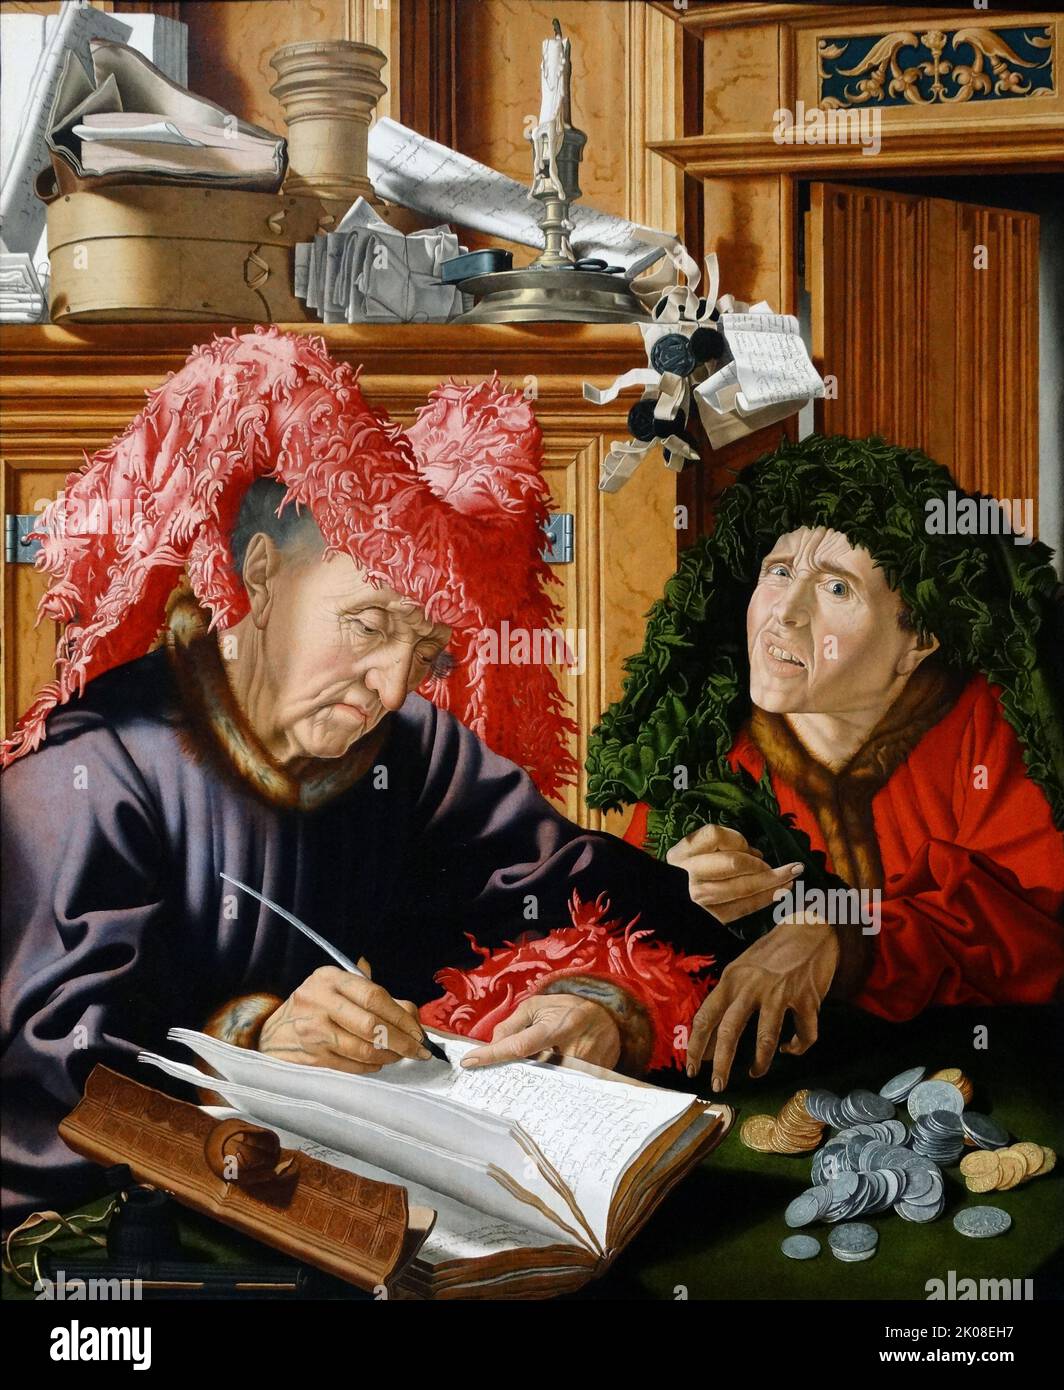 Zwei Steuereinnehmer, c1540s, aus der Werkstatt von Marinus van Reymerswaele oder Marinus van Reymerswale (c. 1490 - c. 1546) war ein niederländischer Renaissance-Maler, der vor allem für seine Genreszenen und seine religiöse Komposition bekannt war Stockfoto